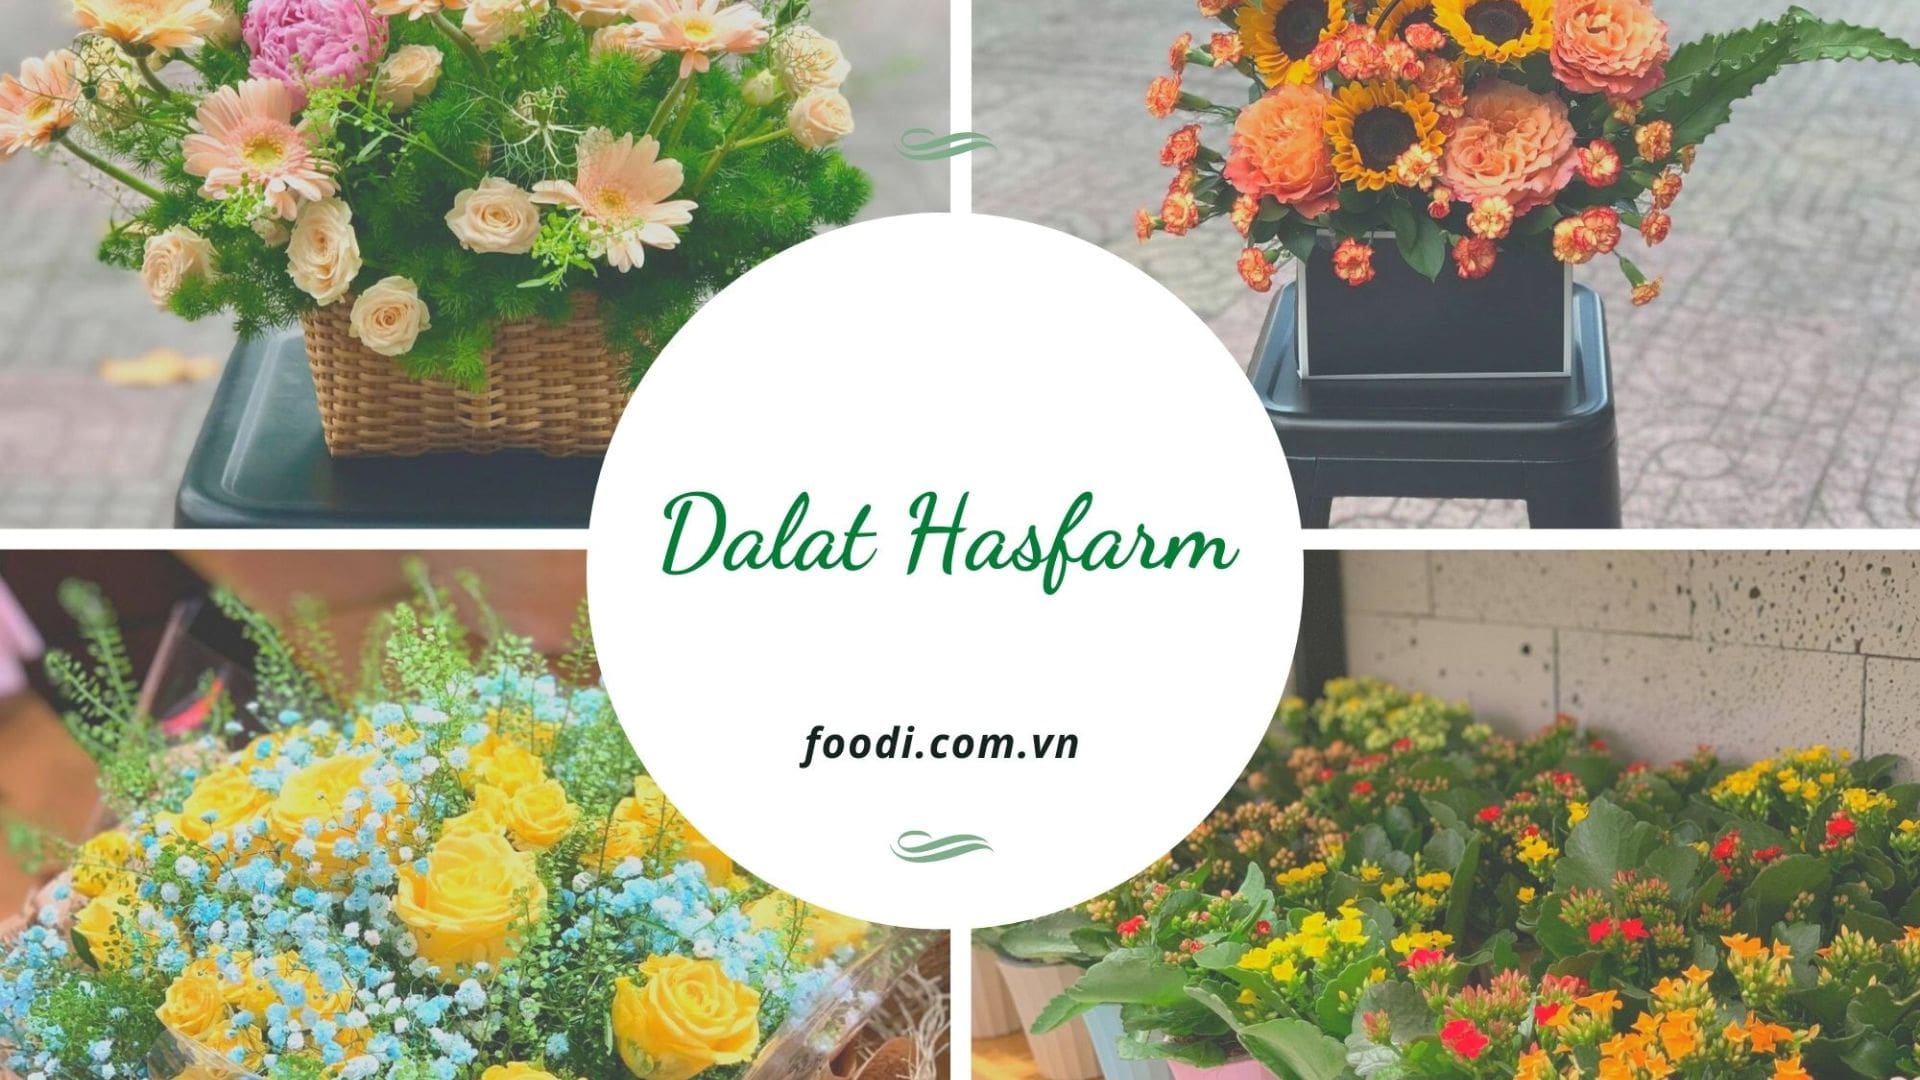 Dalat Hasfarm Flower Shop – shop hoa tươi gần đây tại Đà Nẵng chất lượng